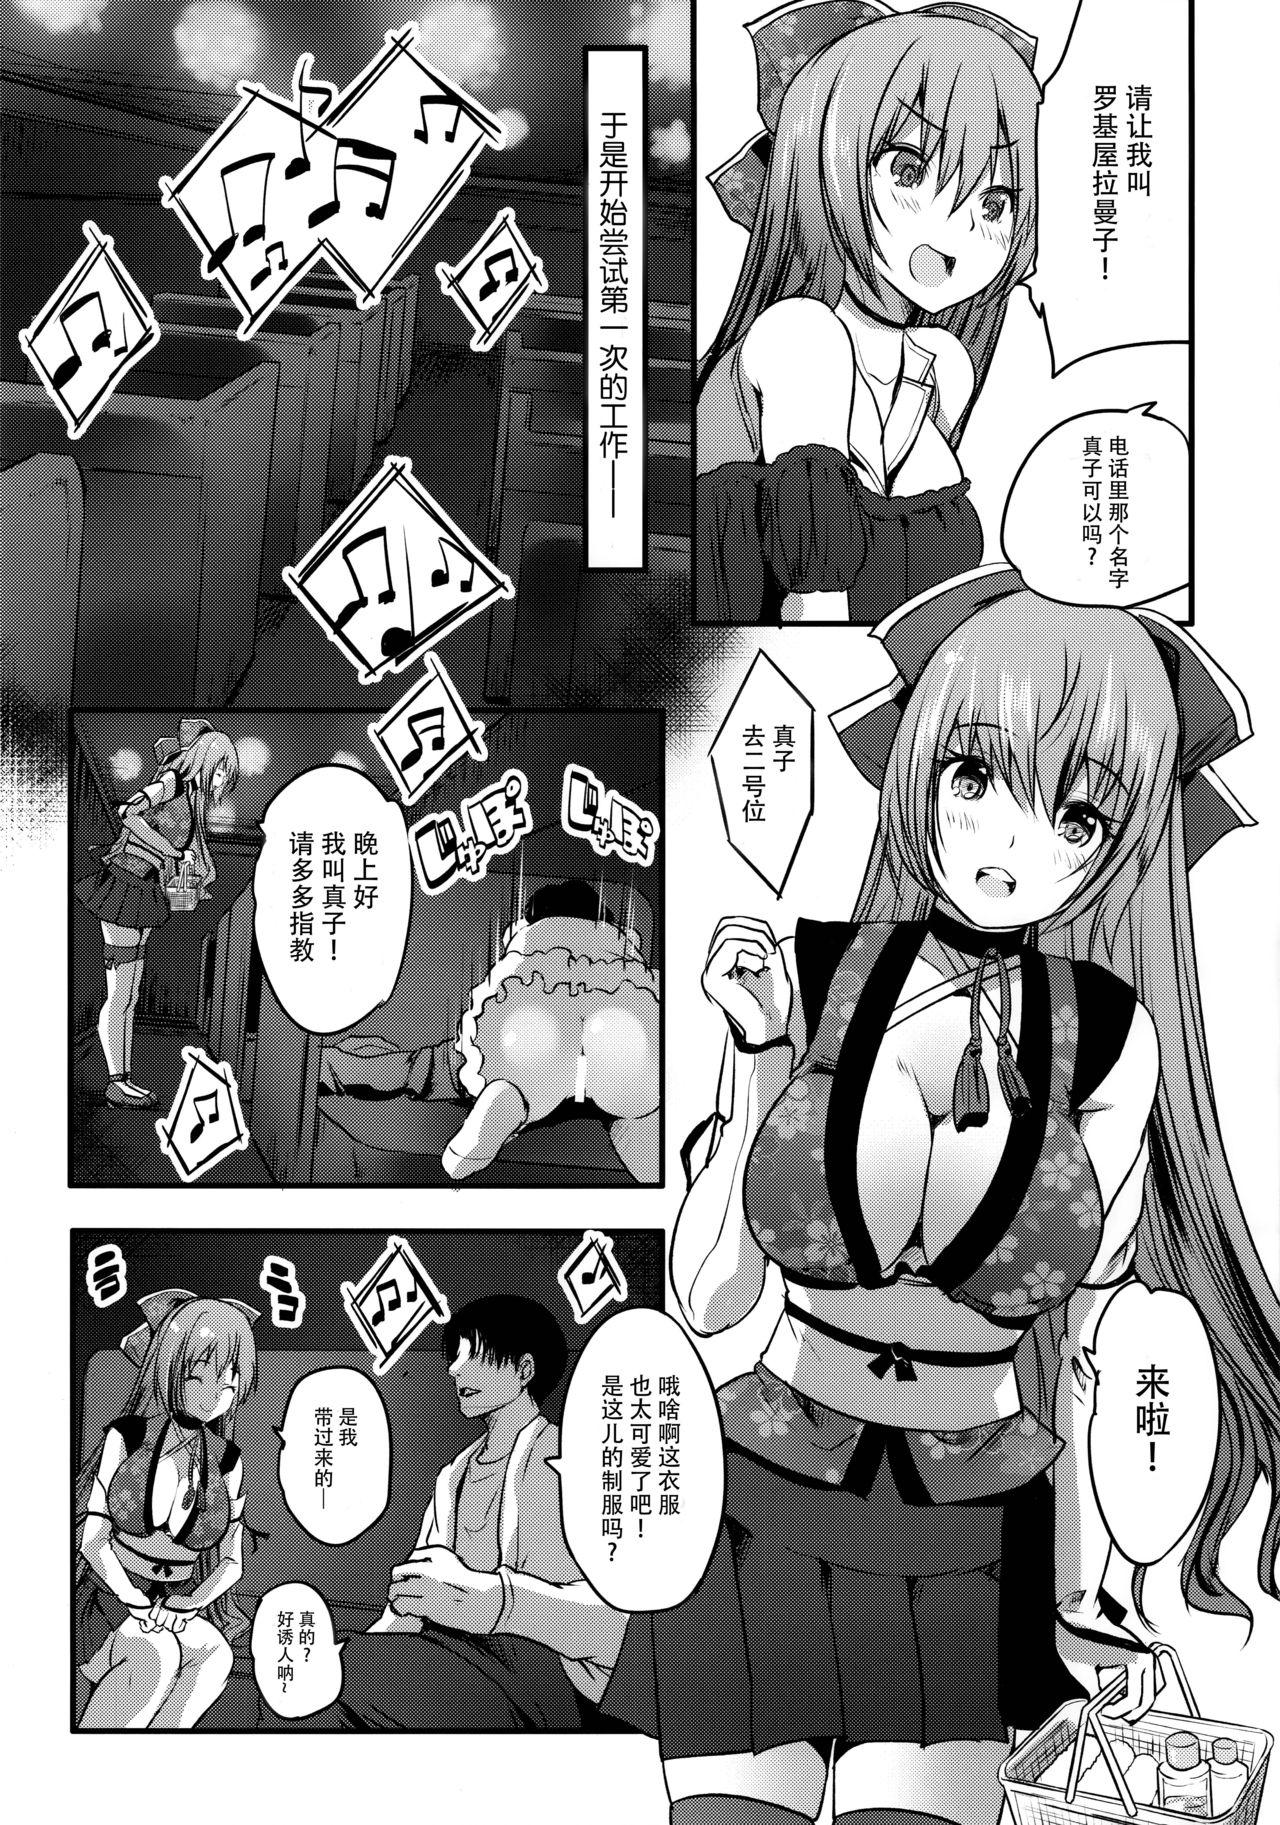 Love Making Roujima Mako no Ecchi na Oshigoto Yatte mita! - Original 18 Year Old Porn - Page 8